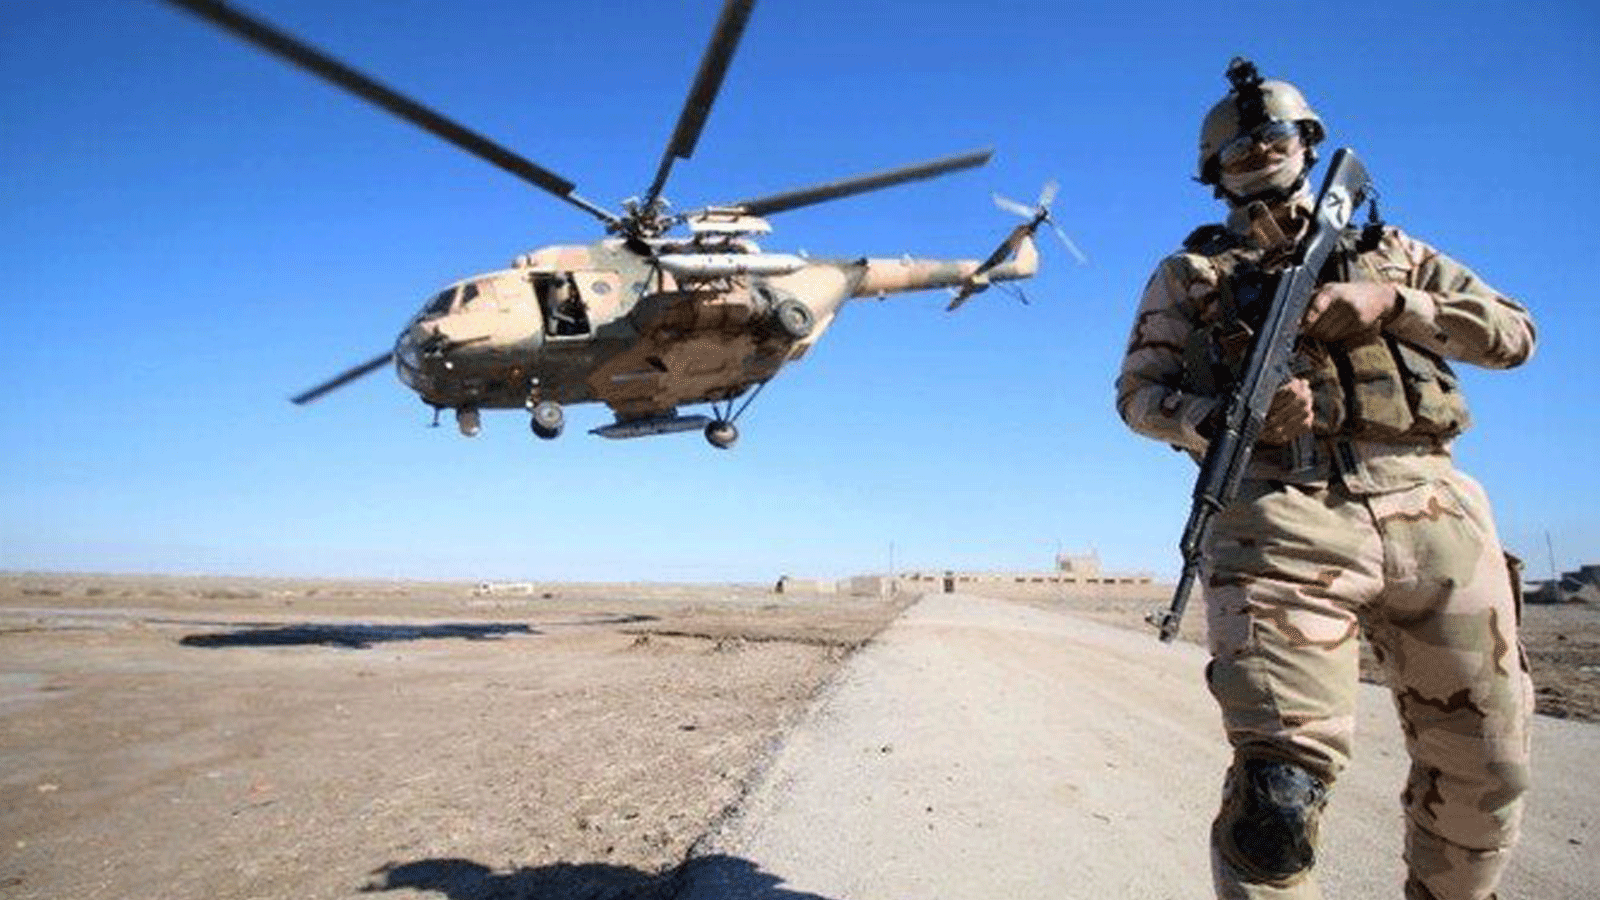 فقد العراق عدة طائرات هليكوبتر في حوادث ونيران أرضية في السنوات الأخيرة